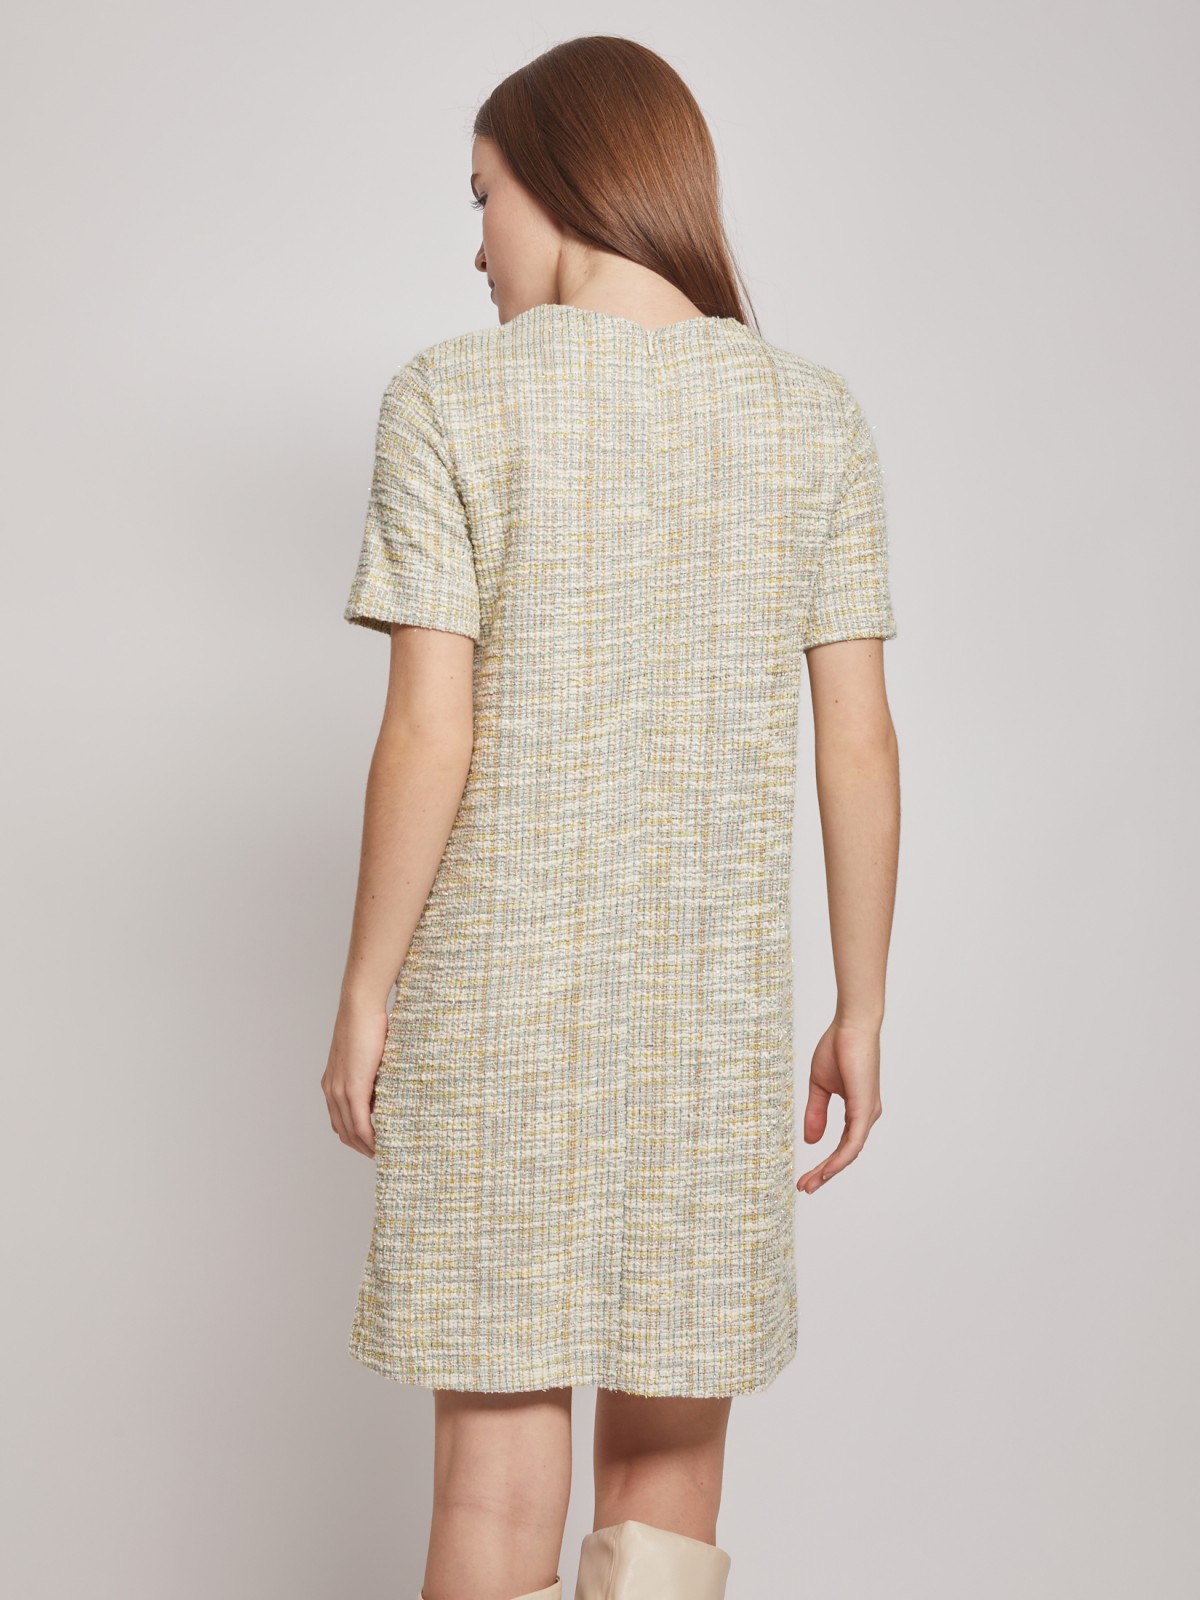 Короткое твидовое платье Zolla, цвет Мятный, размер S